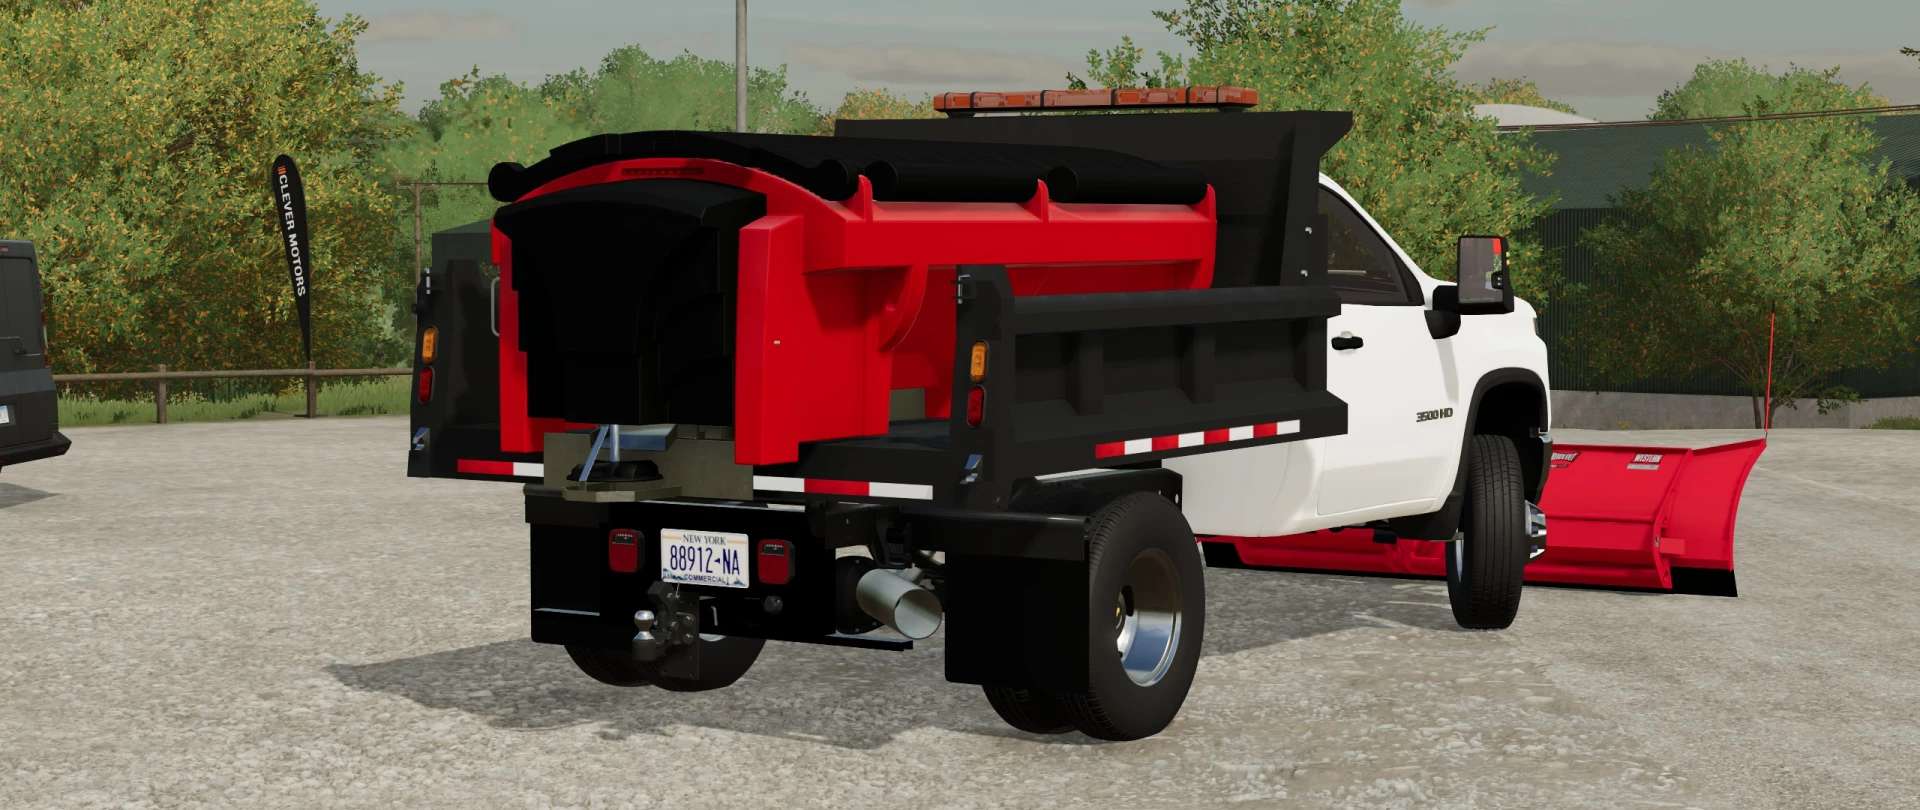 2020 Chevy Silverado 3500hd Dump Truck V1000 Fs22 Mod Farming Simulator 22 Mod 2633